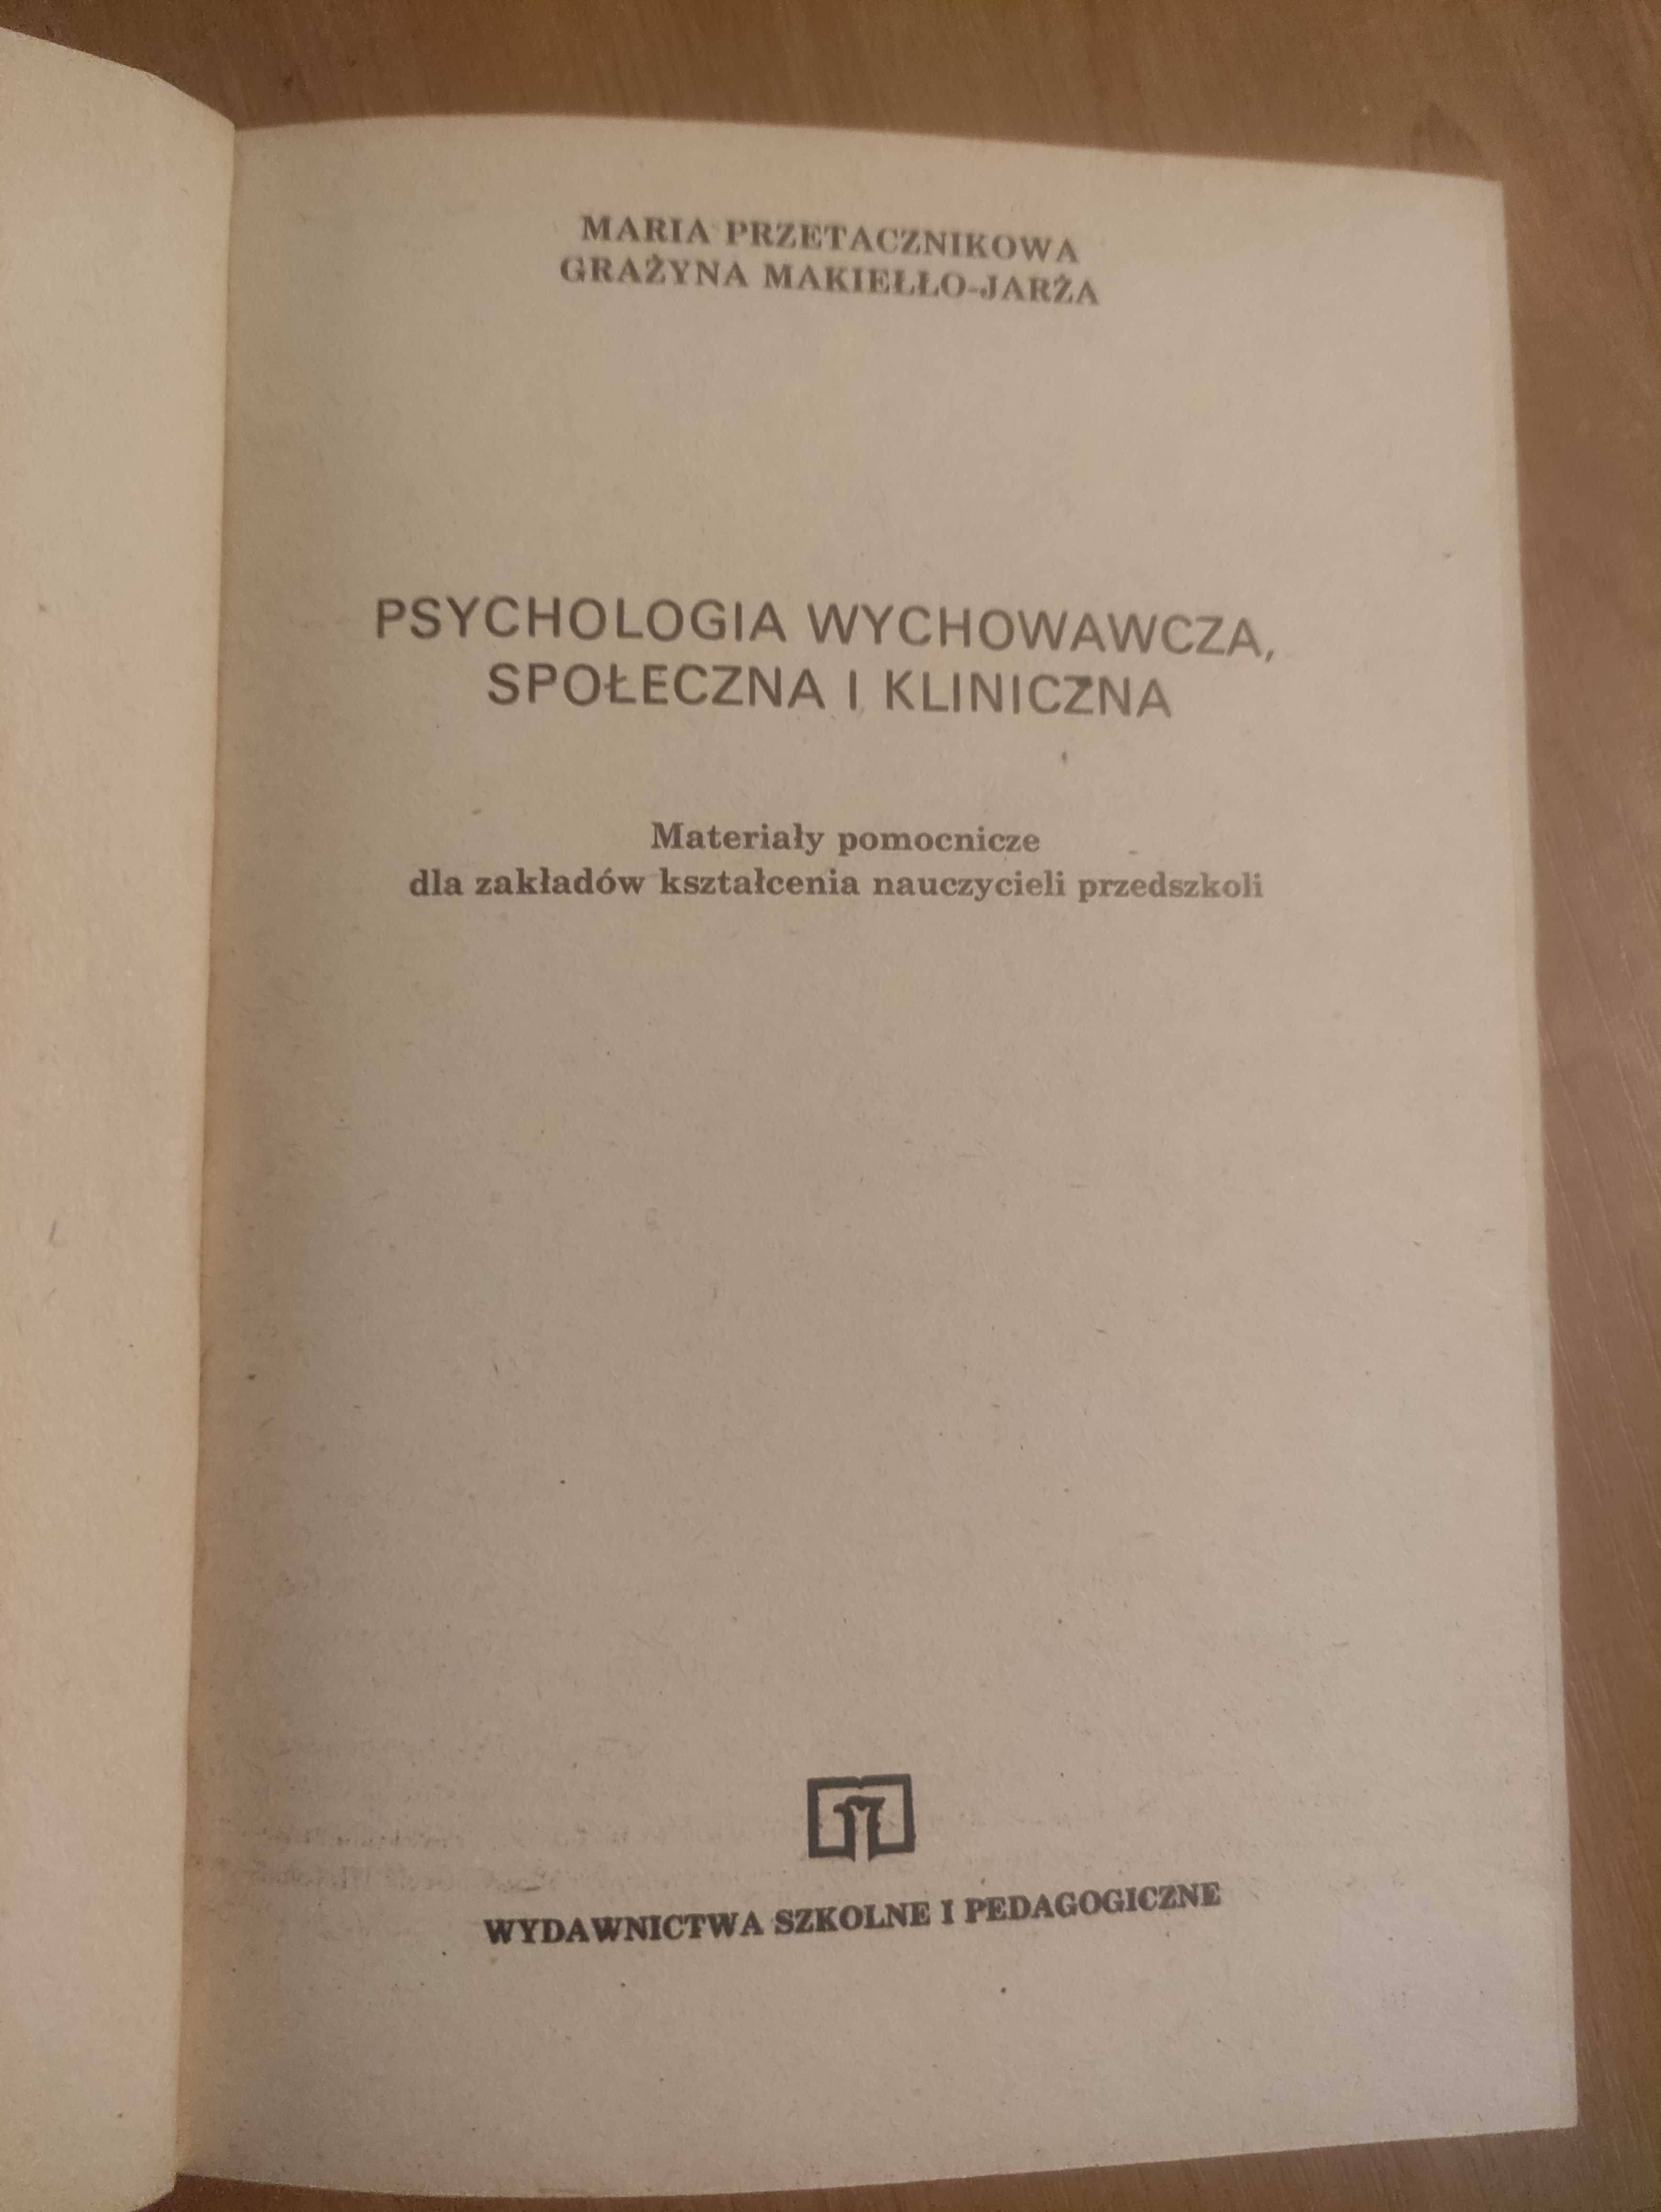 Psychologia wychowawcza, społeczna i kliniczna "1979